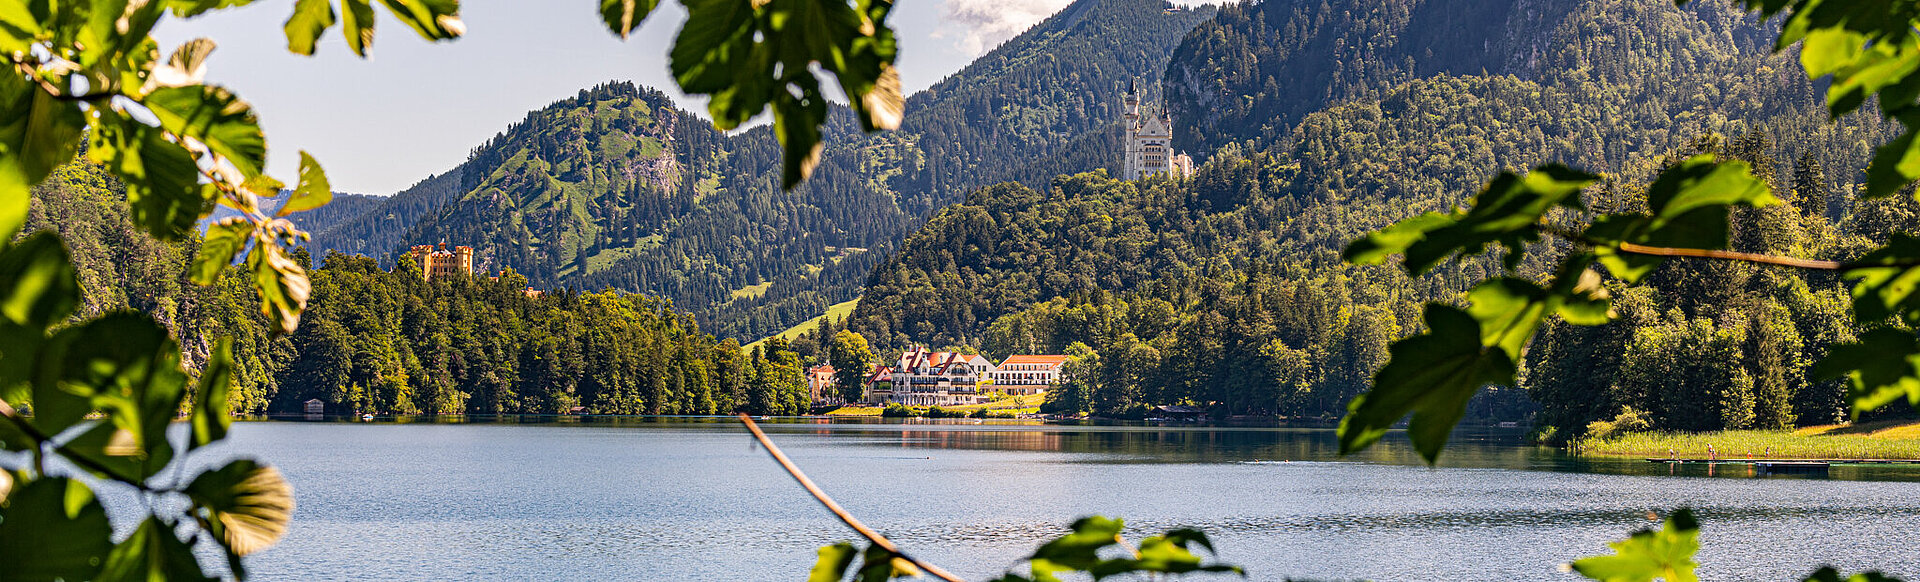 AMERON Neuschwanstein Alpsee Resort & Spa Aussenansicht See